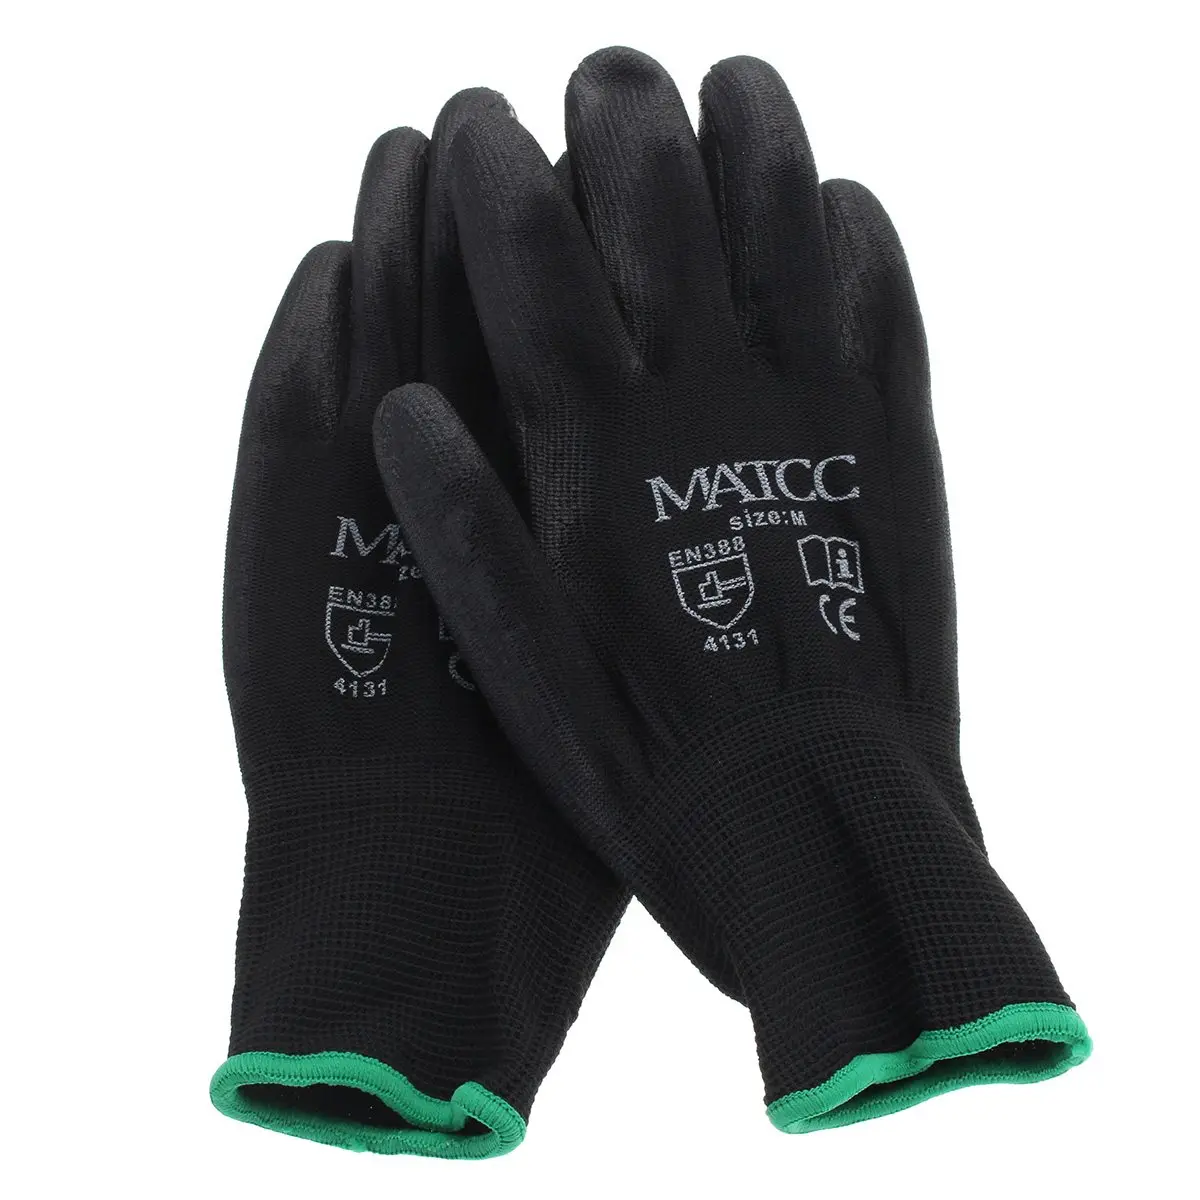 Safurance 12 пар ПУ нитриловые защитные рабочие перчатки садовые строительные рукавицы с захватом Размер M/L/XL безопасность на рабочем месте